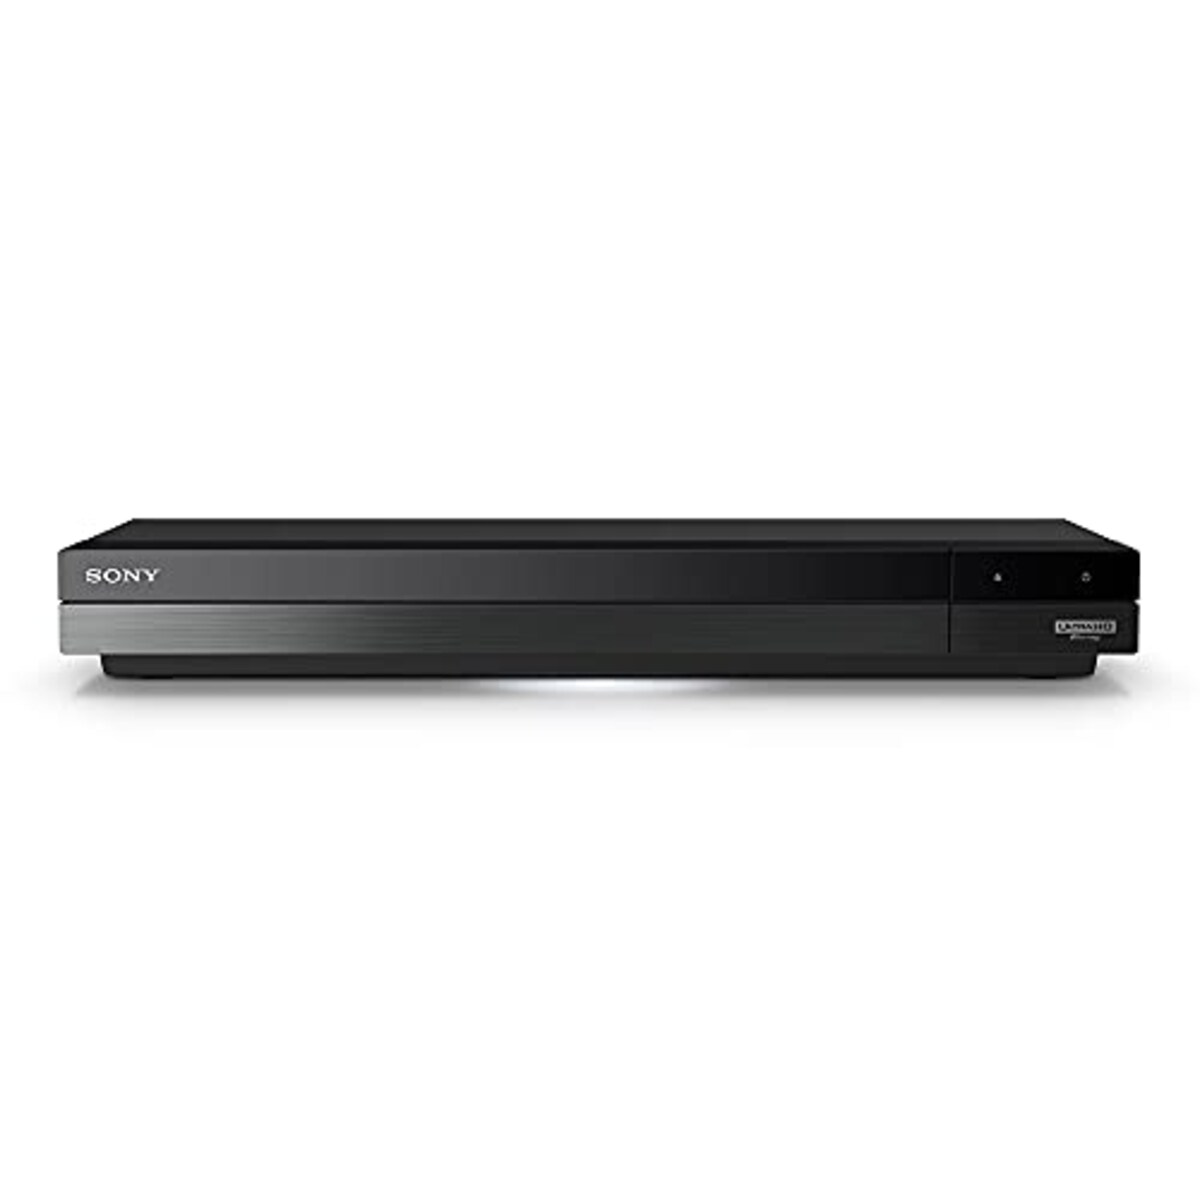 ソニー(SONY)の4Kチューナー内蔵 Ultra HD ブルーレイ/DVDレコーダーBDZ-FBT4100 | 価格比較・レビュー評価